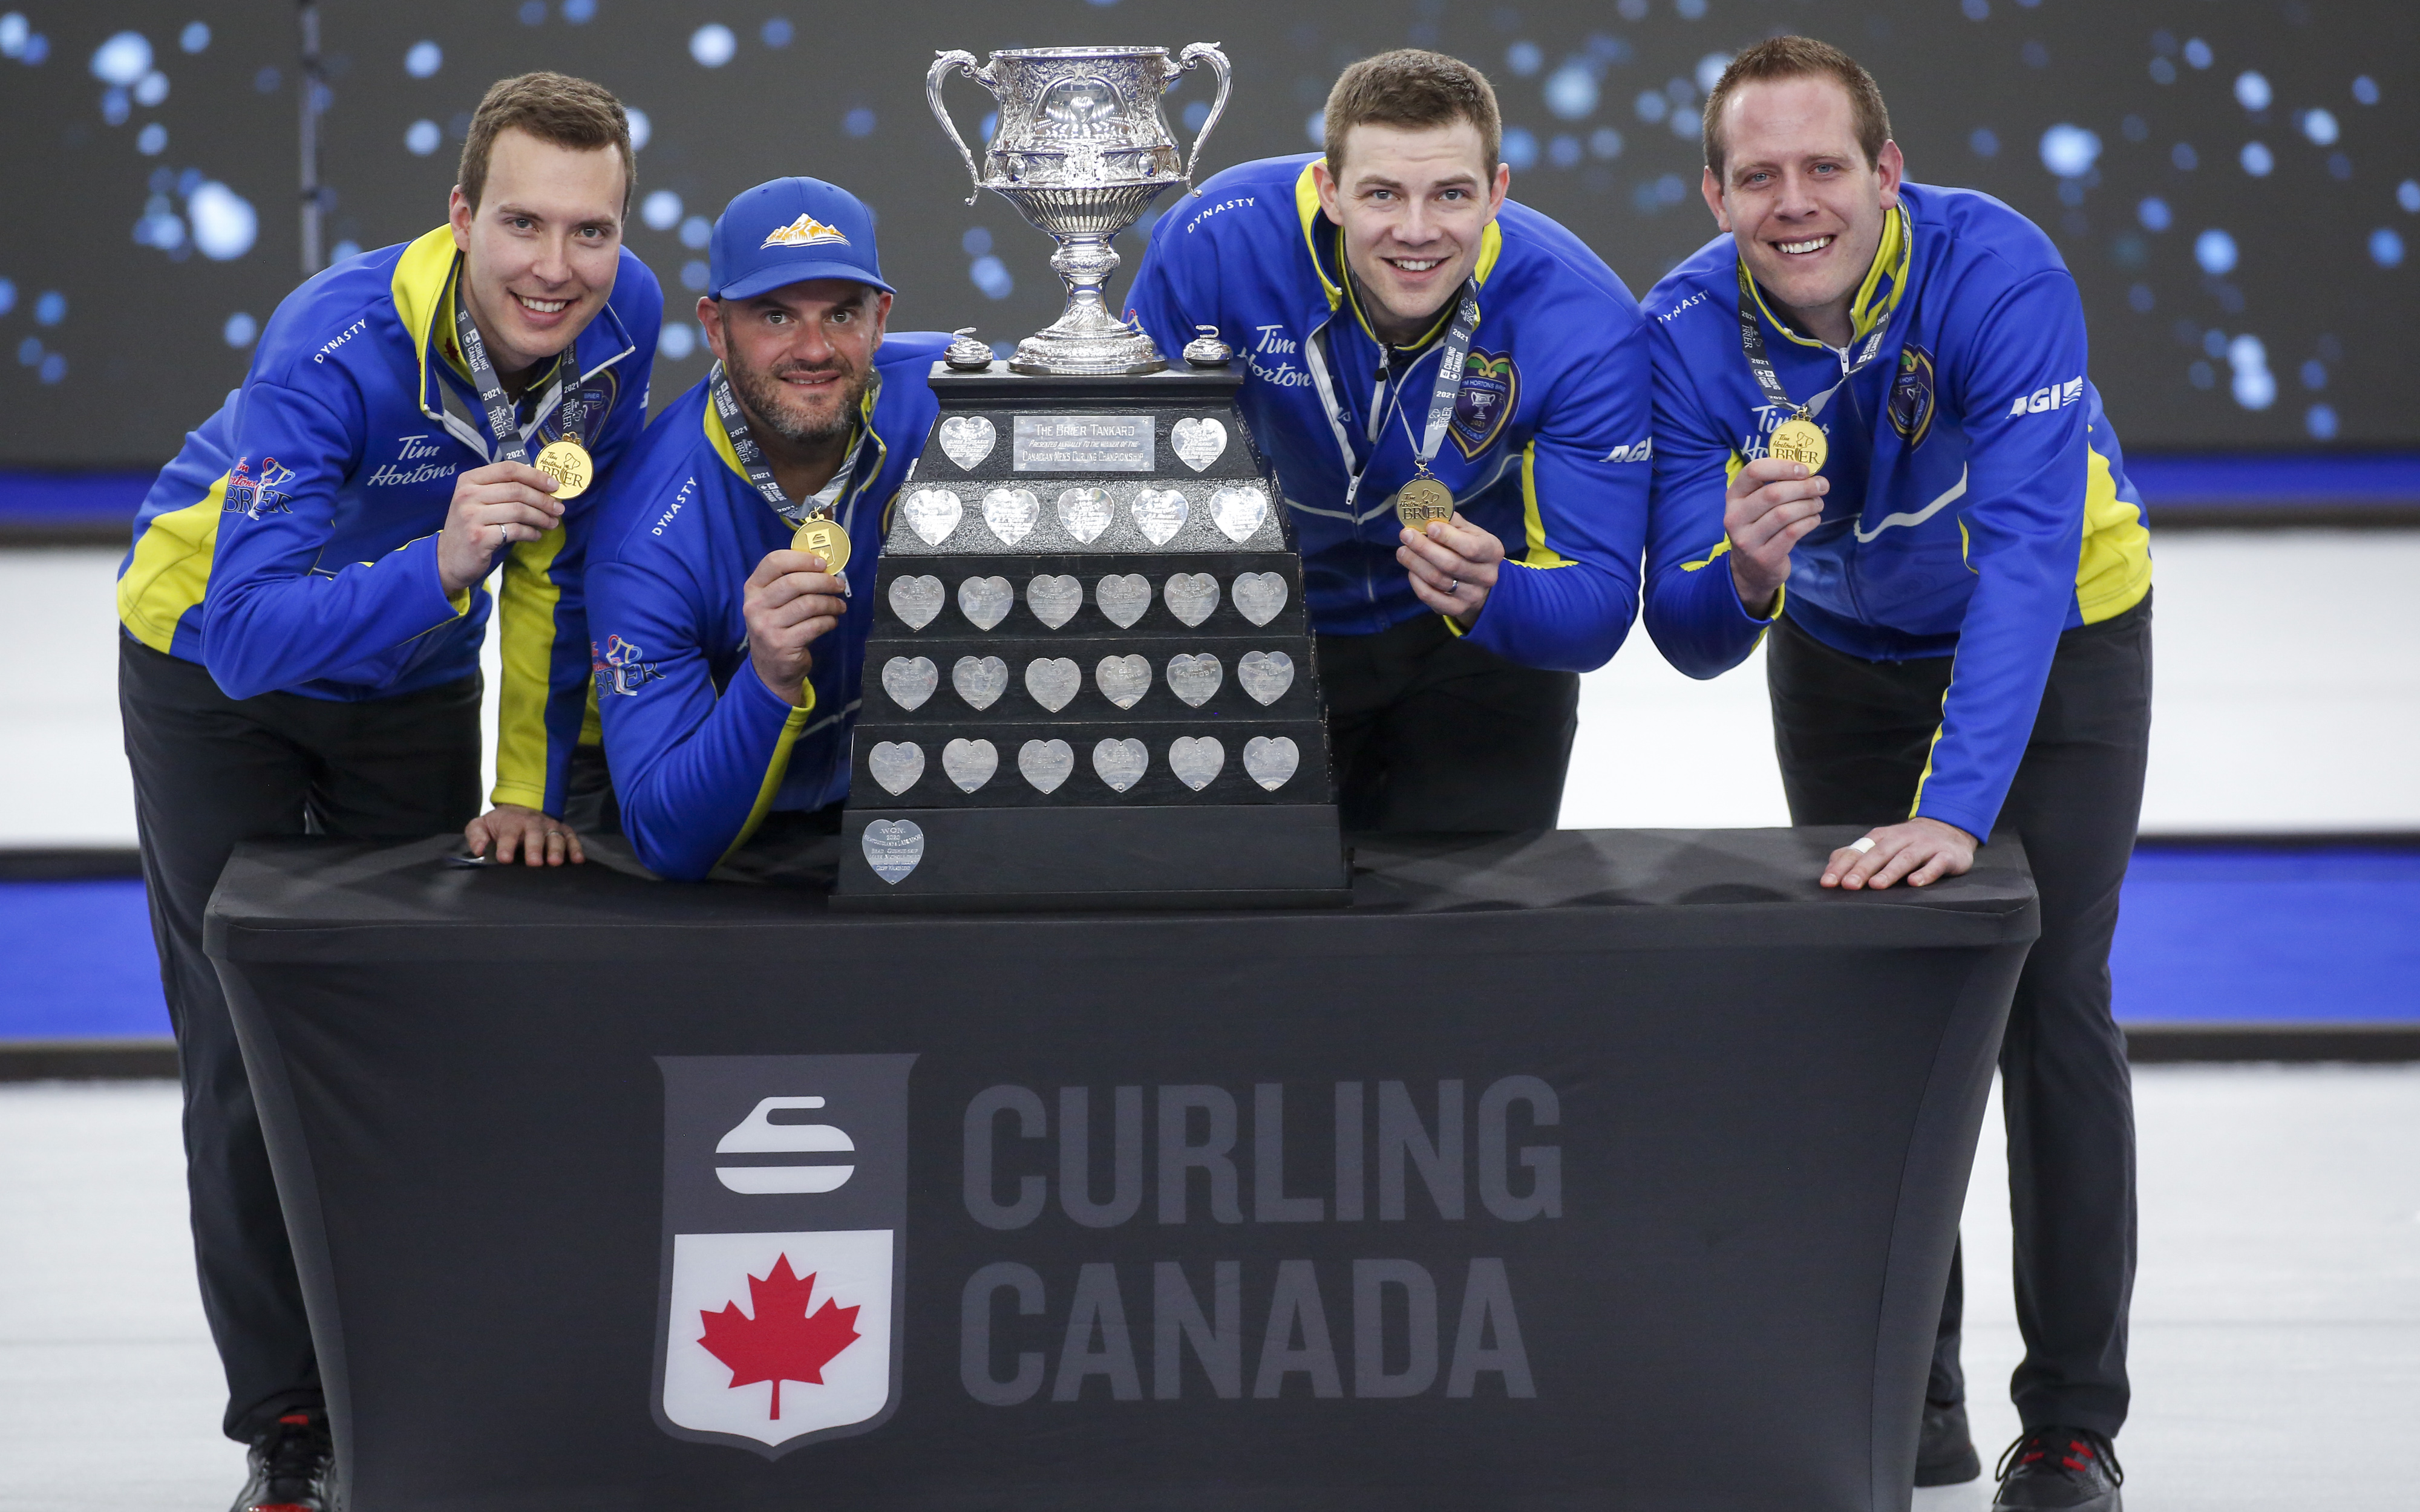 Lag Alberta, venstre til høyre, hoppe Brendan Bottcher, tredje Darren Støping, andre Brad Thiessen, føre Karrick Martin feire beseiret Team Wild Card To til å vinne Brier curling finalen I Calgary, Alta., Søndag 14.Mars 2021.